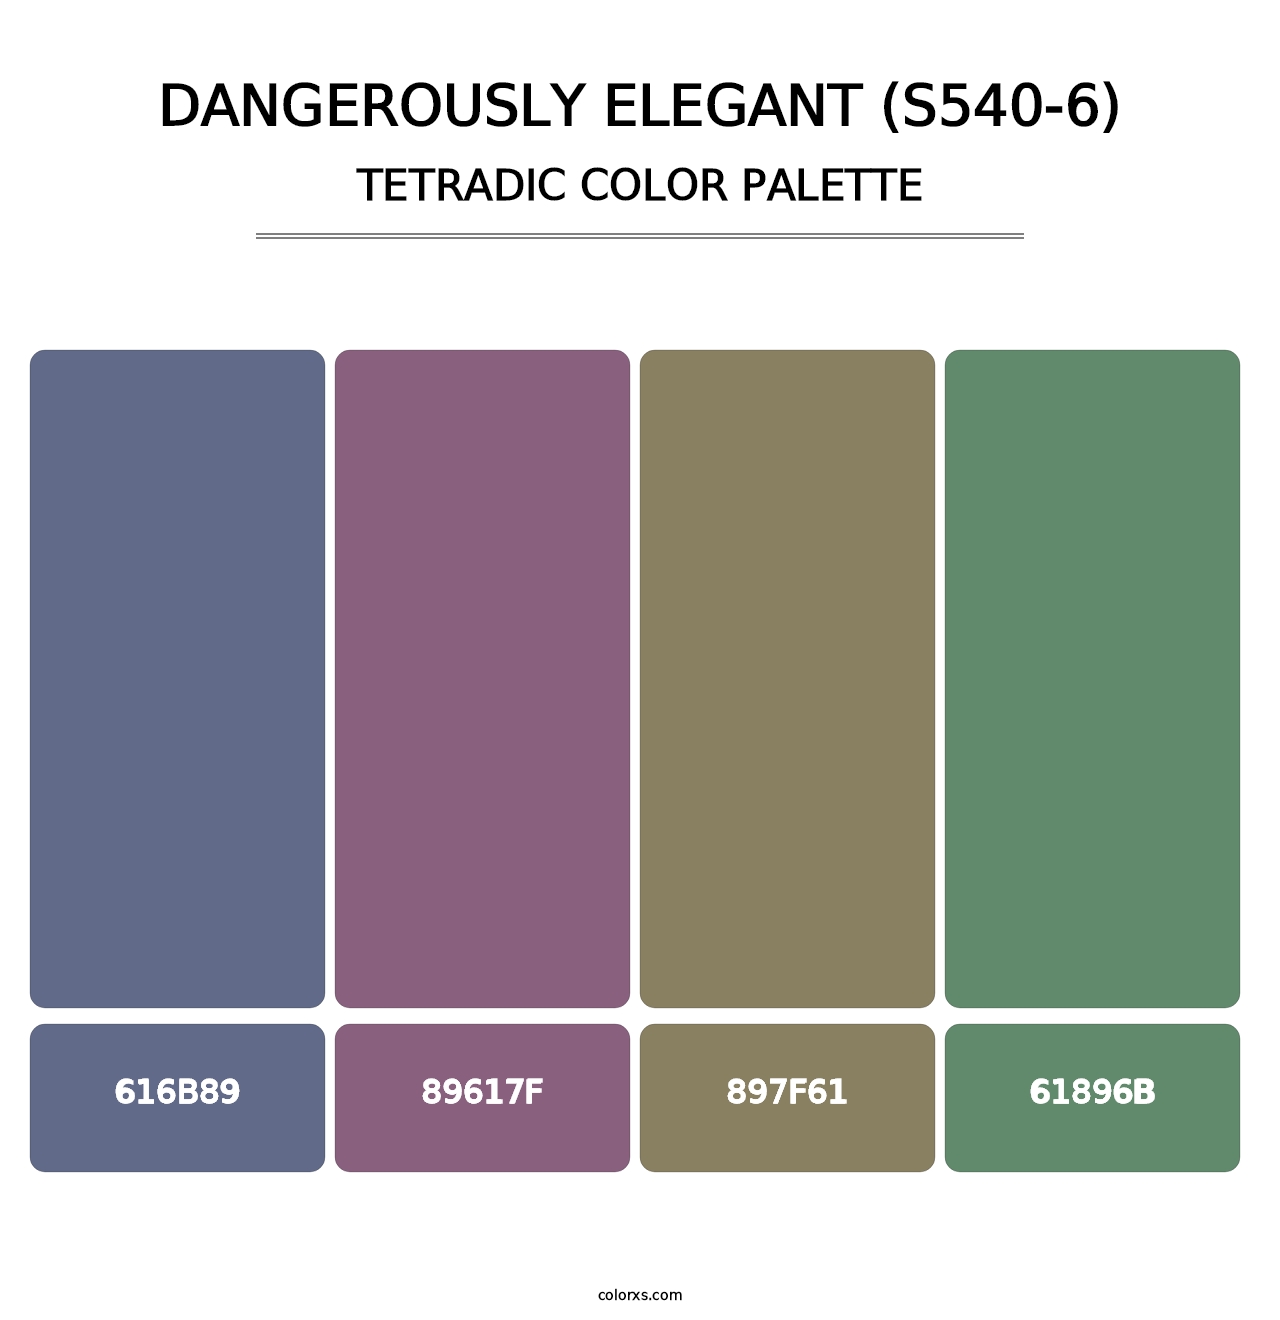 Dangerously Elegant (S540-6) - Tetradic Color Palette